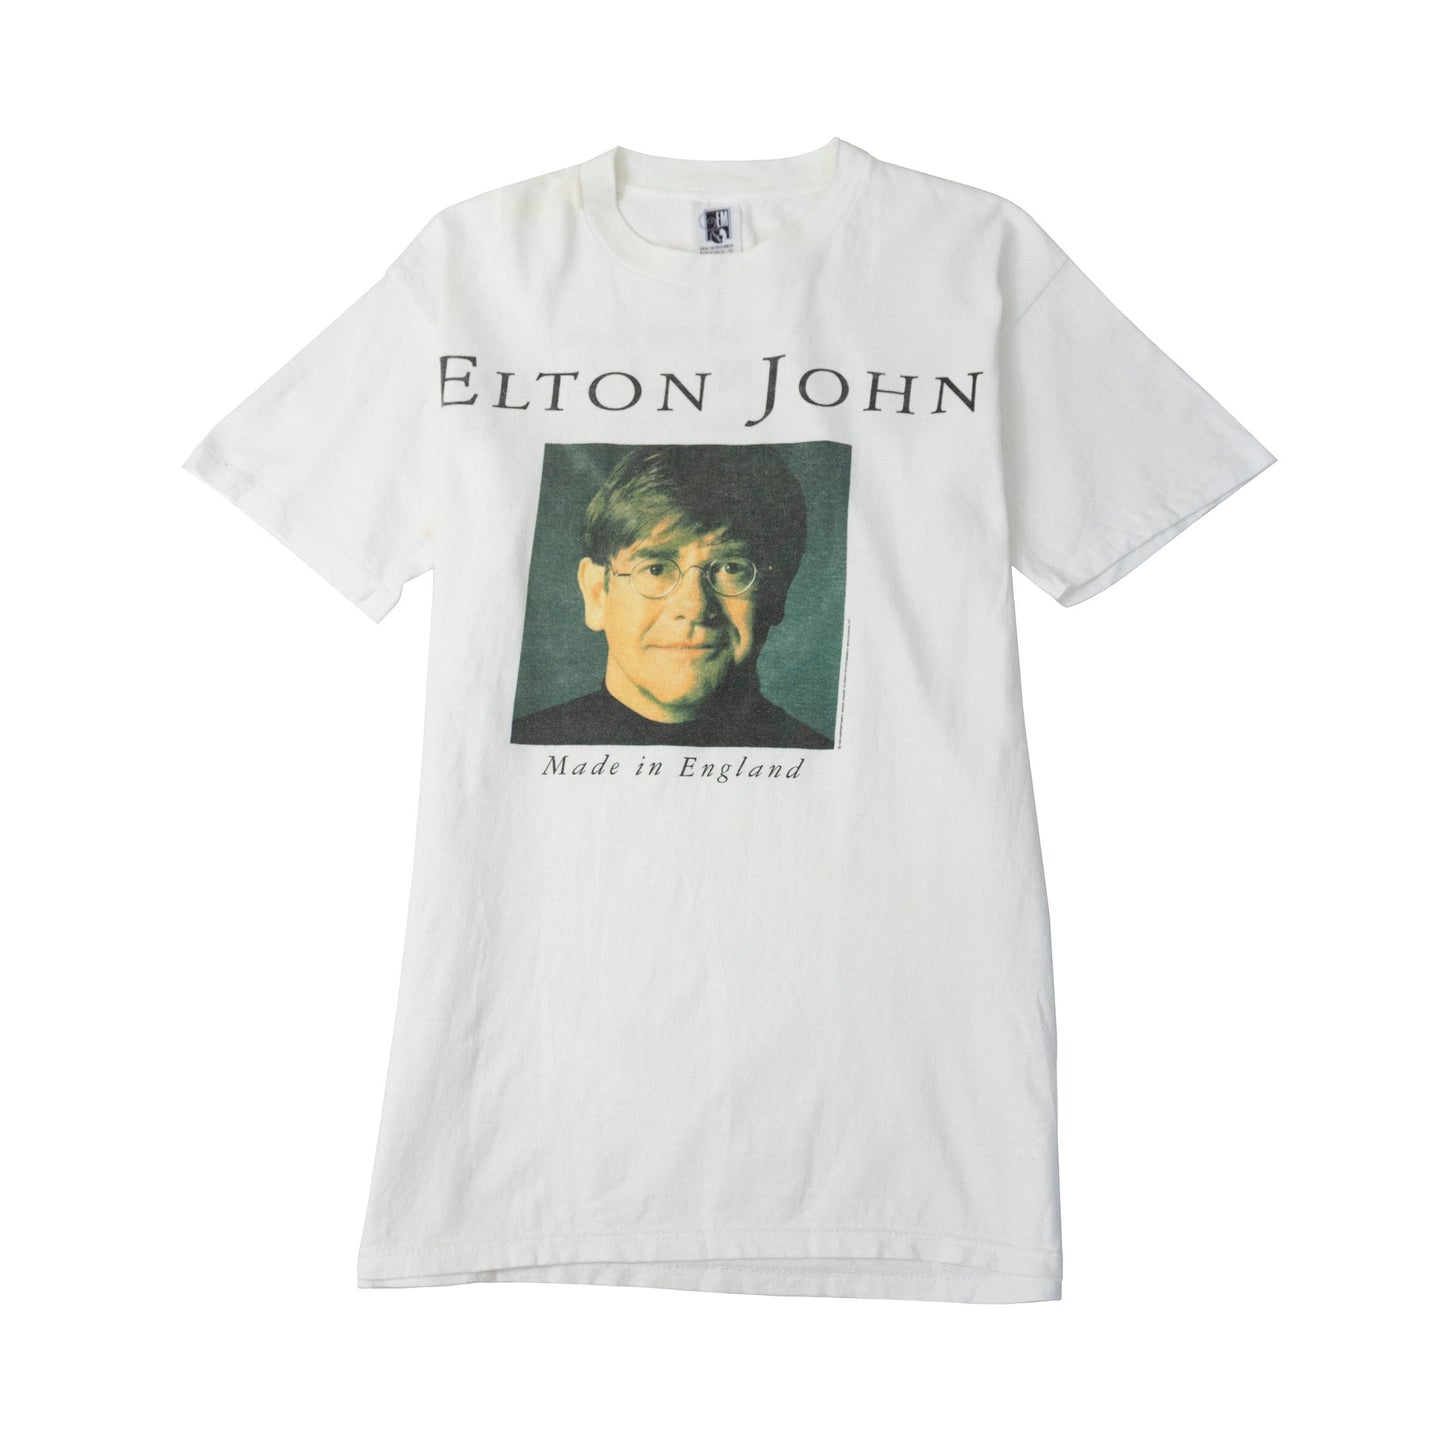 Elton John Made In England 1995 Tour Tee